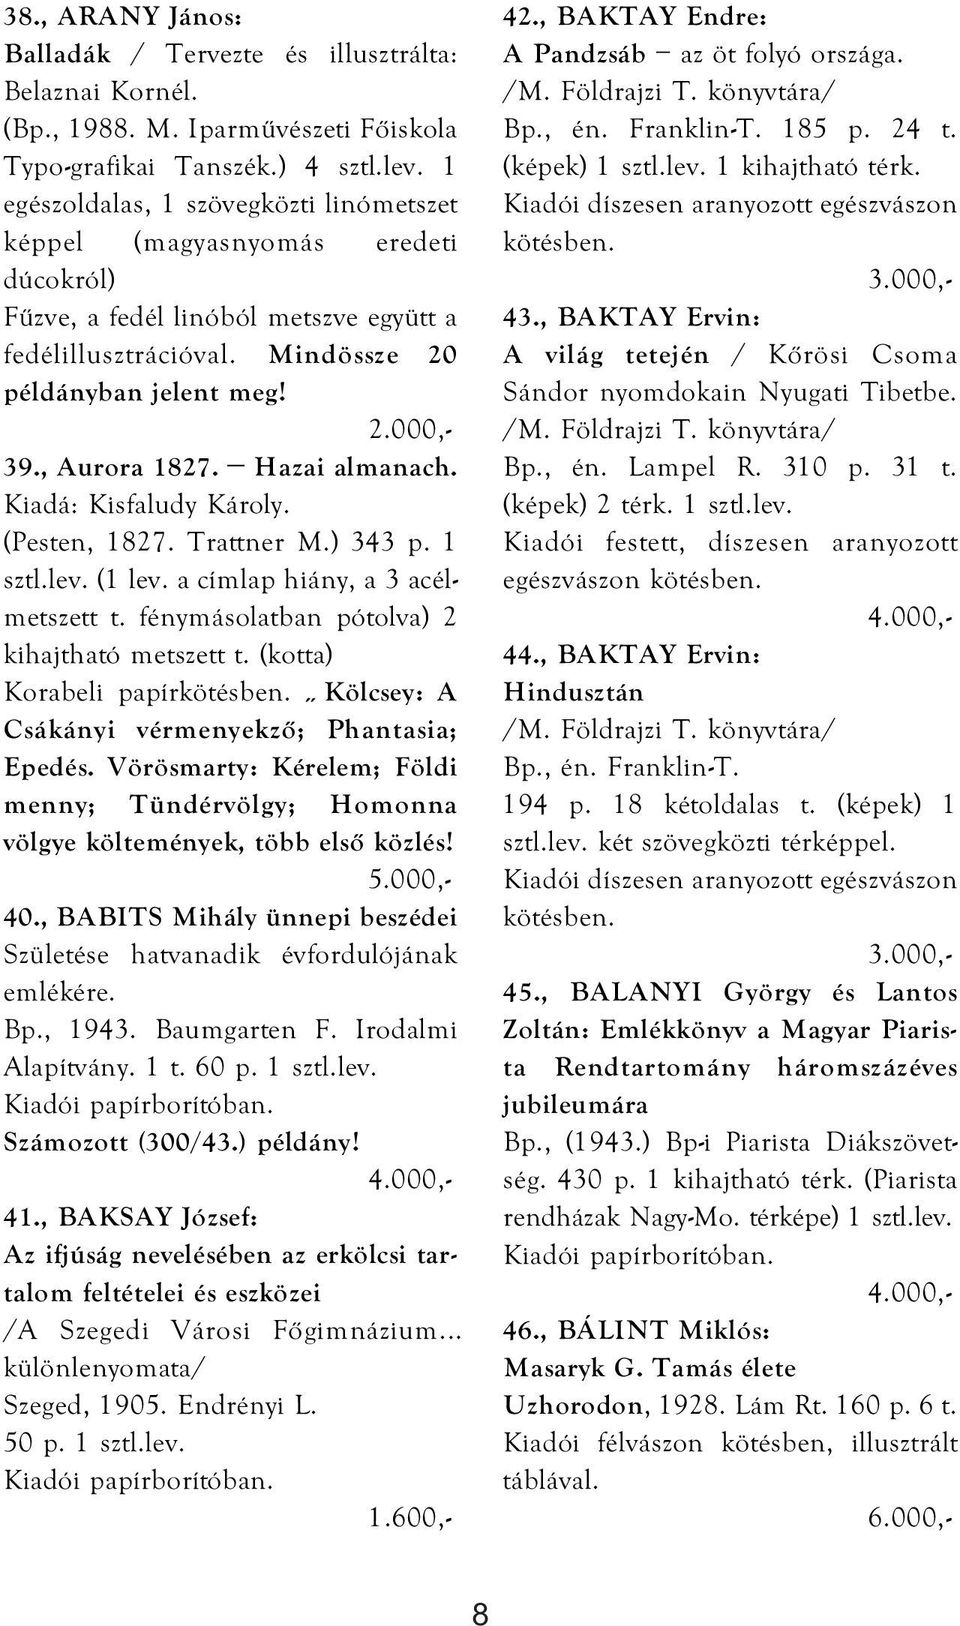 Hazai almanach. Kiadá: Kisfaludy Károly. (Pesten, 1827. Trattner M.) 343 p. 1 sztl.lev. (1 lev. a címlap hiány, a 3 acélmetszett t. fénymásolatban pótolva) 2 kihajtható metszett t.